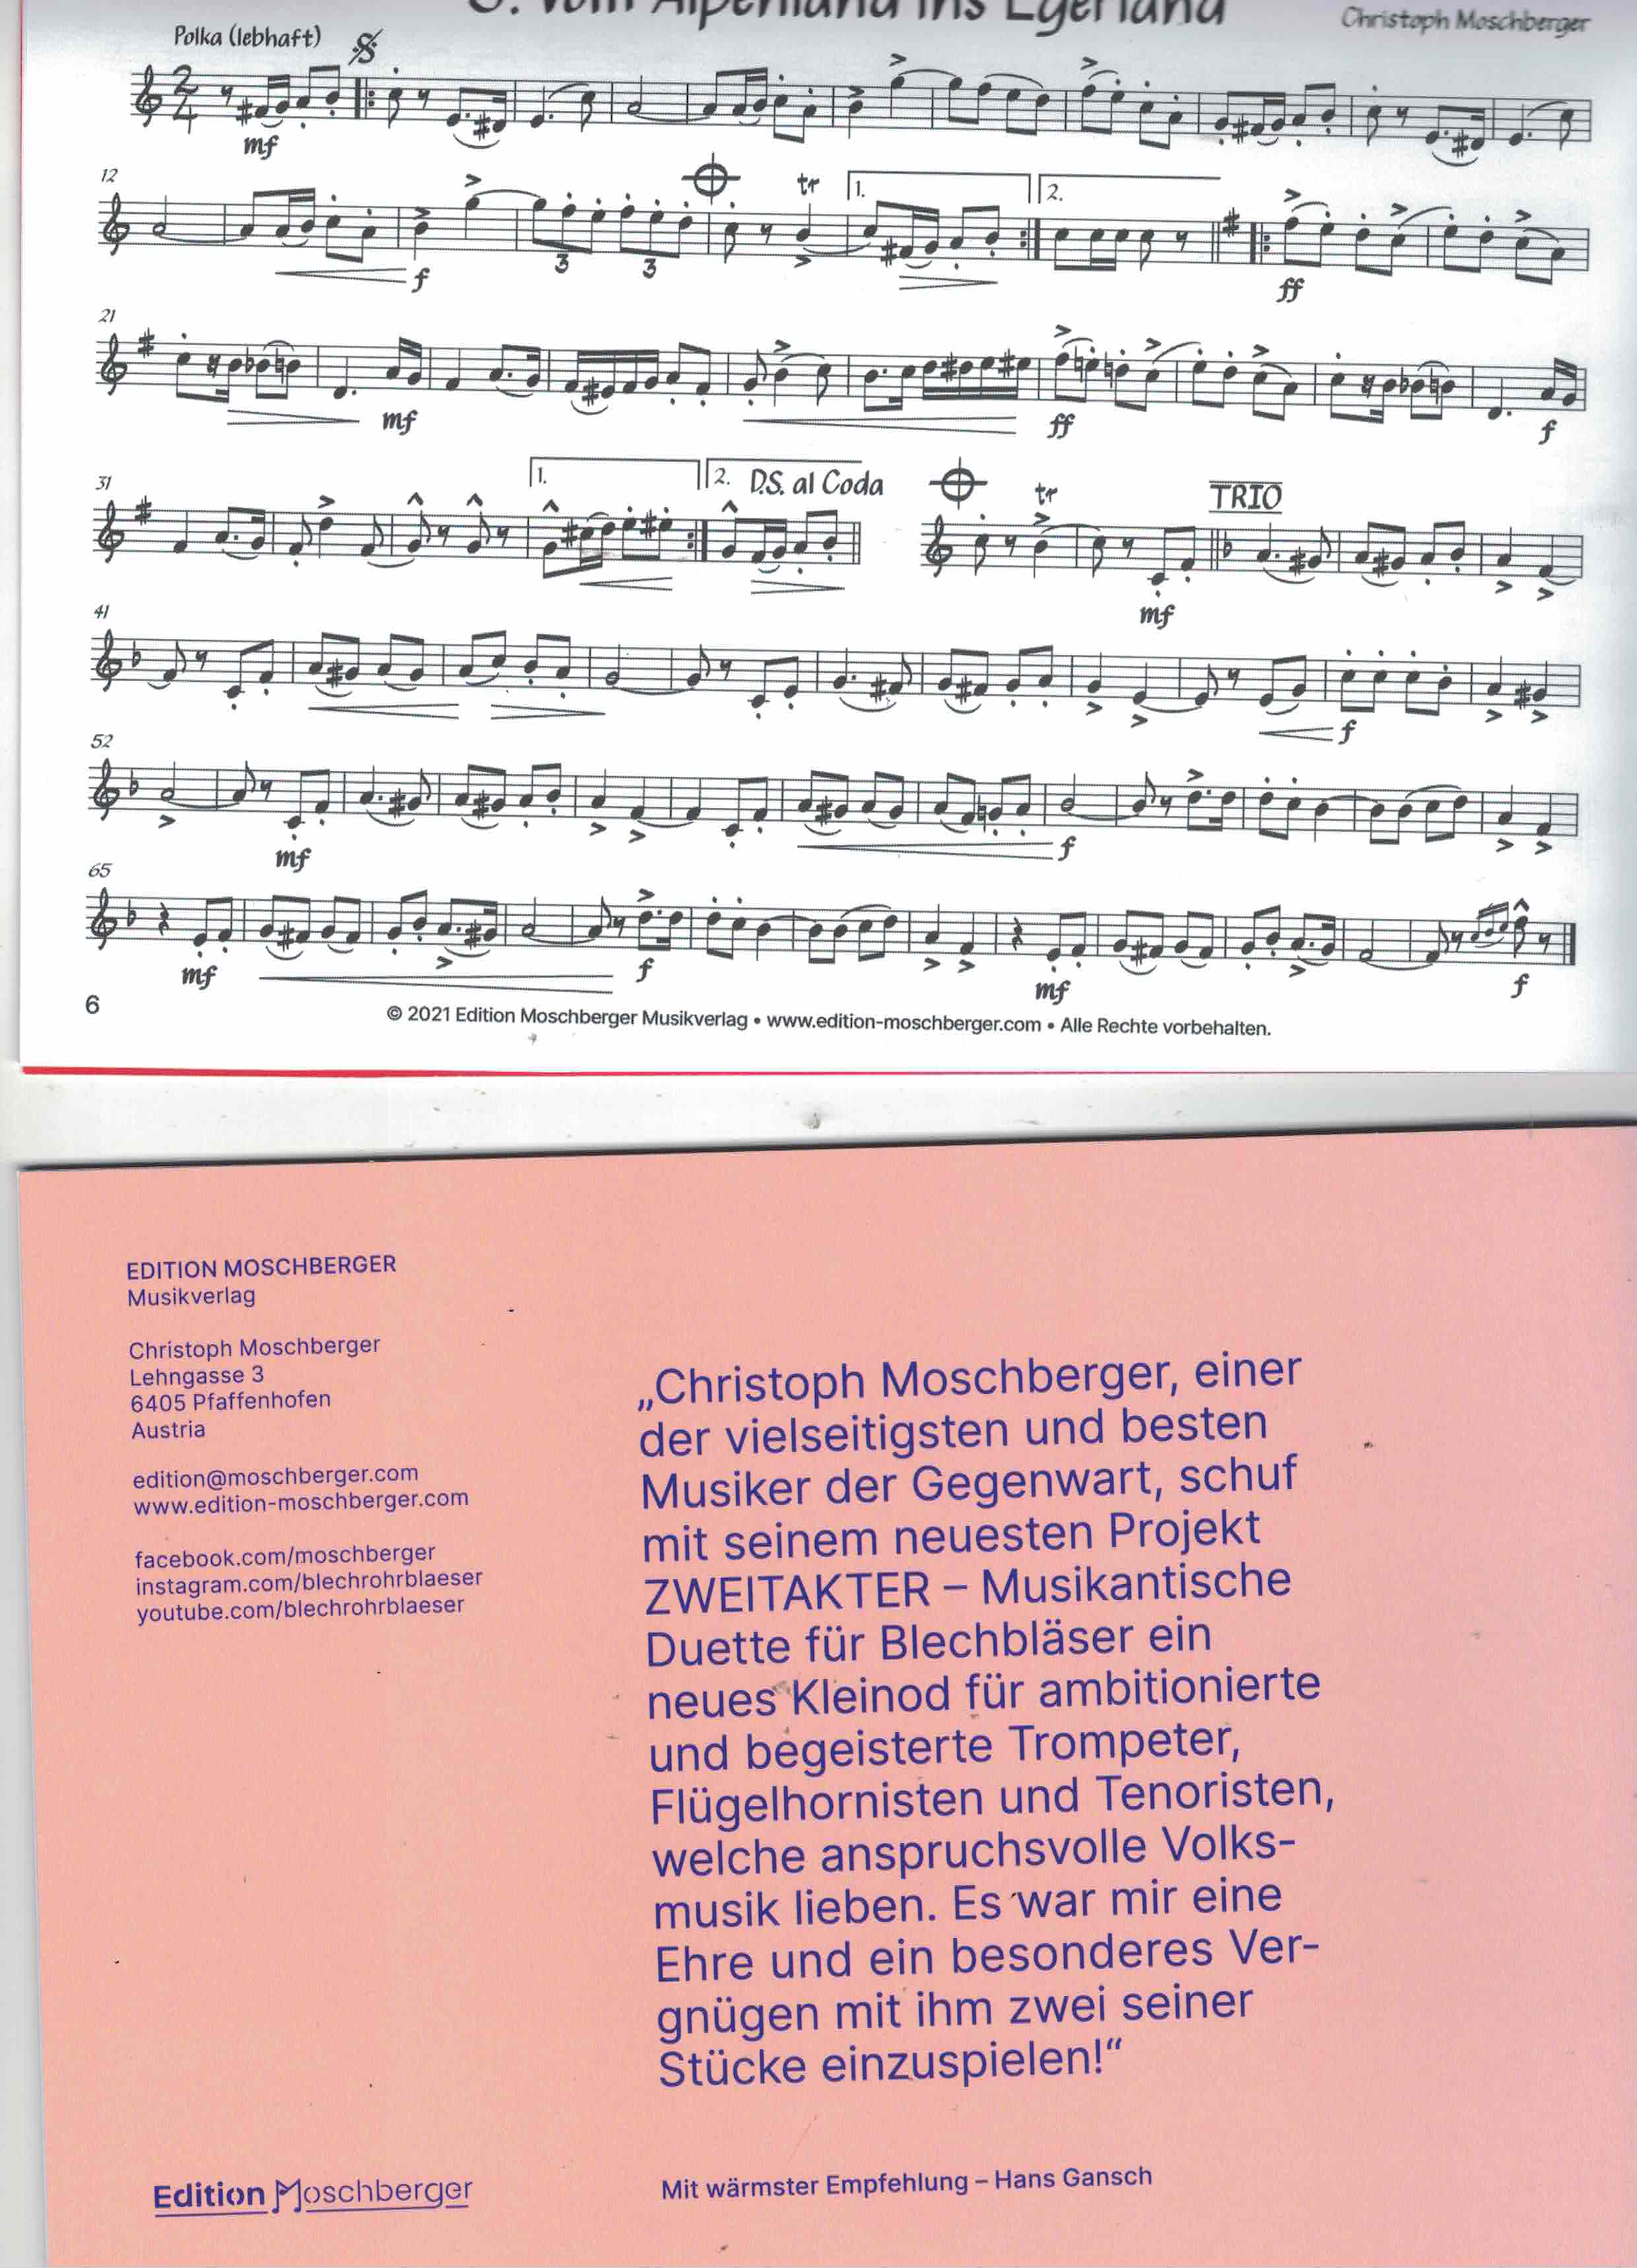 Zweitakter, Chr. Moschberger, Musikantische Duette für Blechbläser